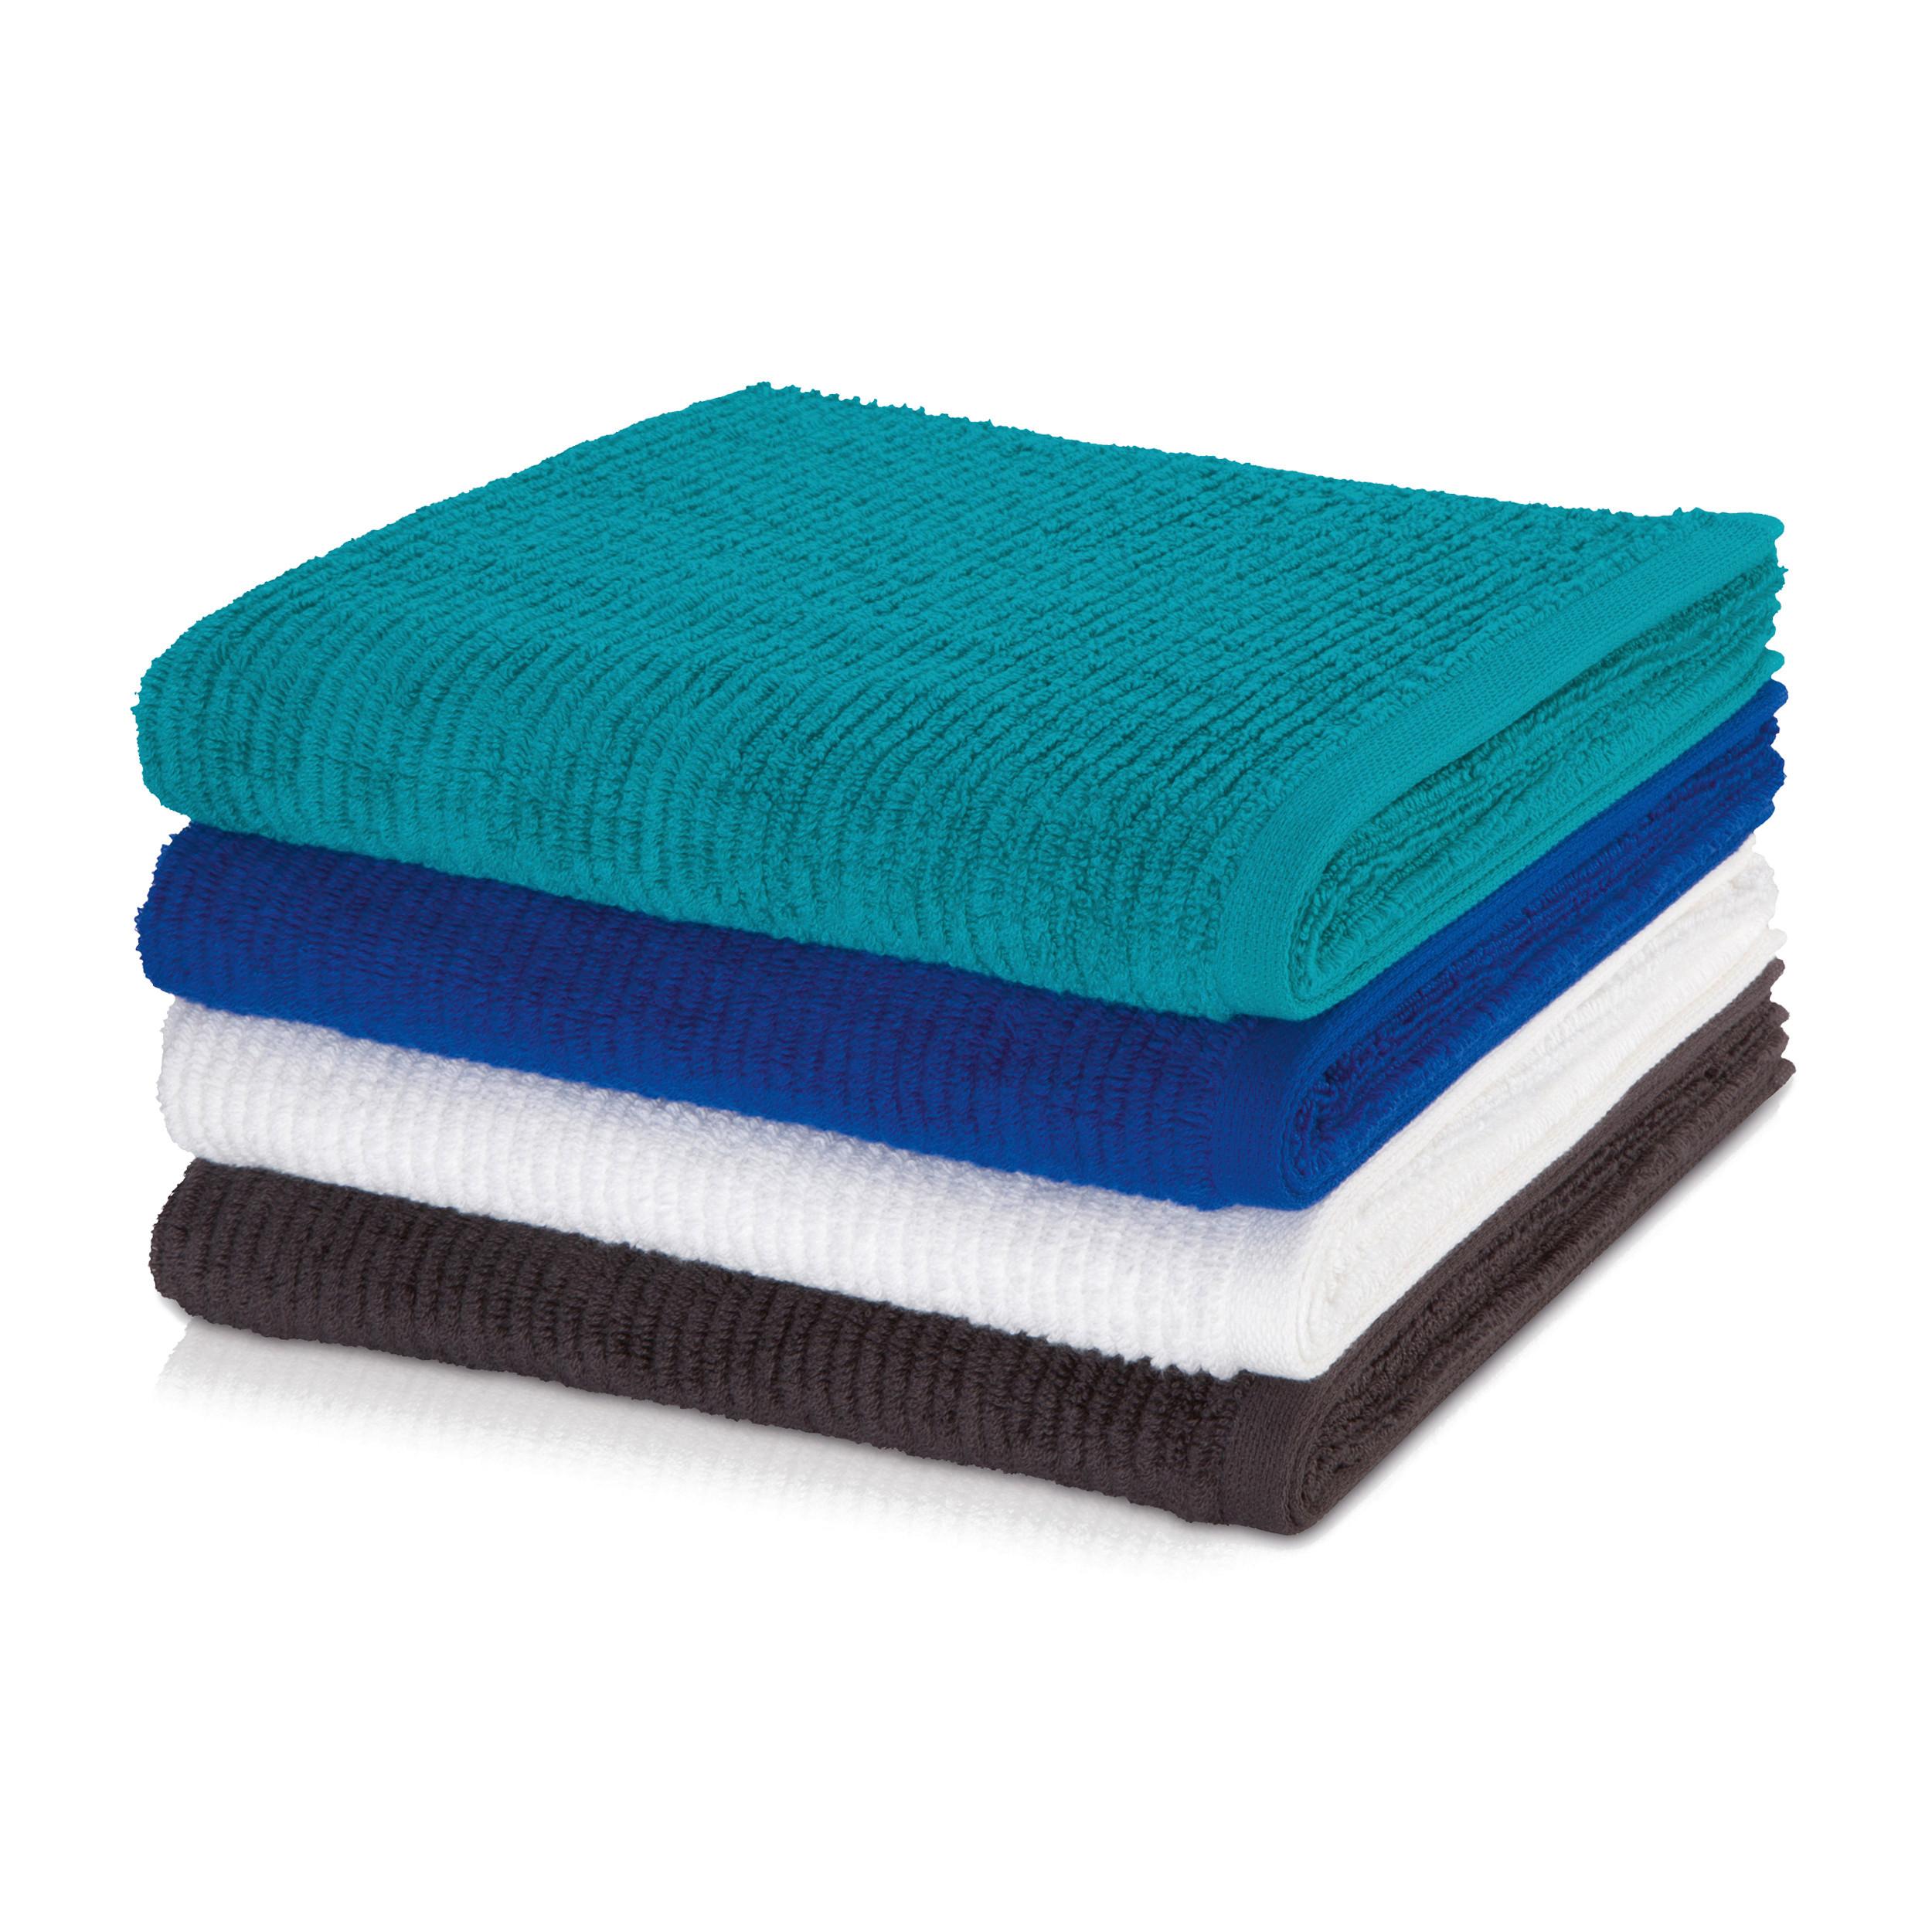 Handtuch Elements Baumwolle 500 G/M2 Weiß 50x100 cm - Weiß, Basics, Textil (50/100cm) - Moeve